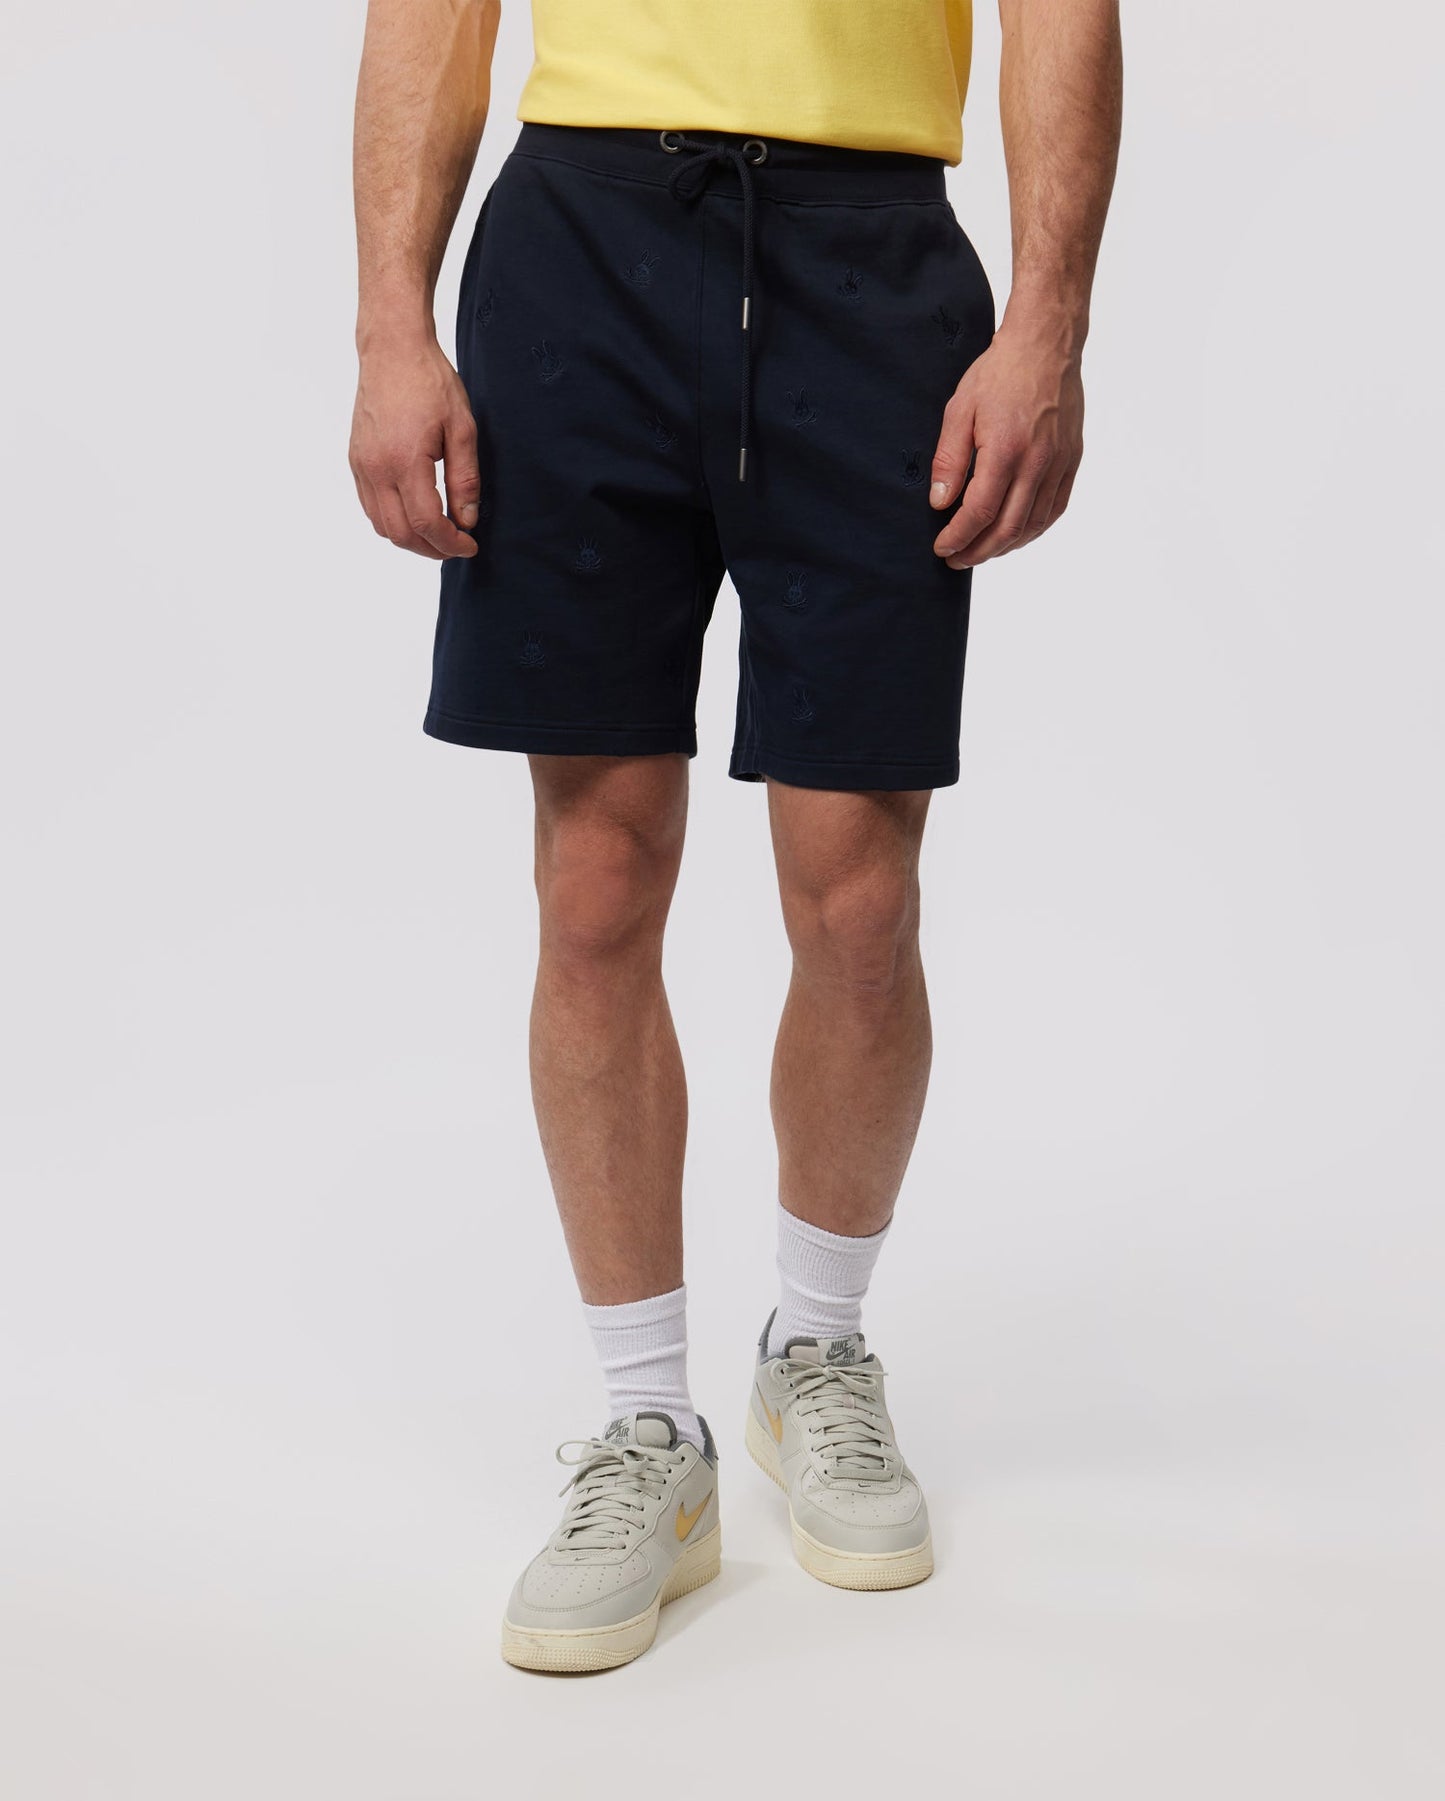 Boss Dog Sweat shorts MD waist 36” #streetwear - Depop